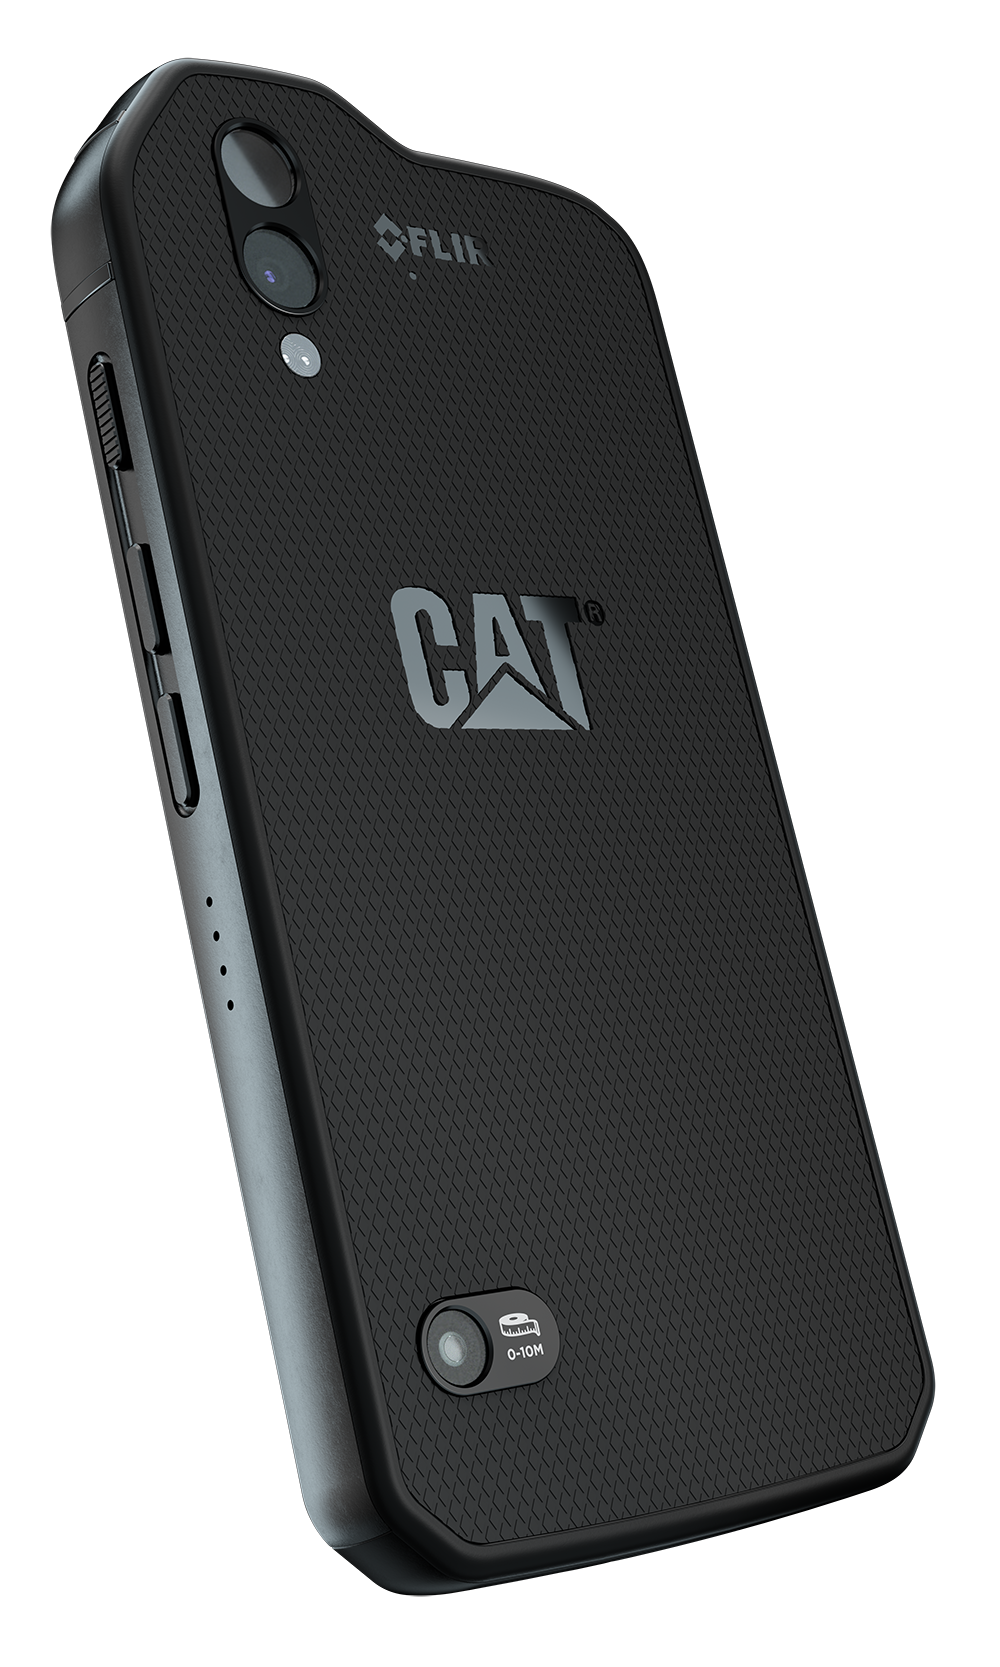 Cat S61 phone